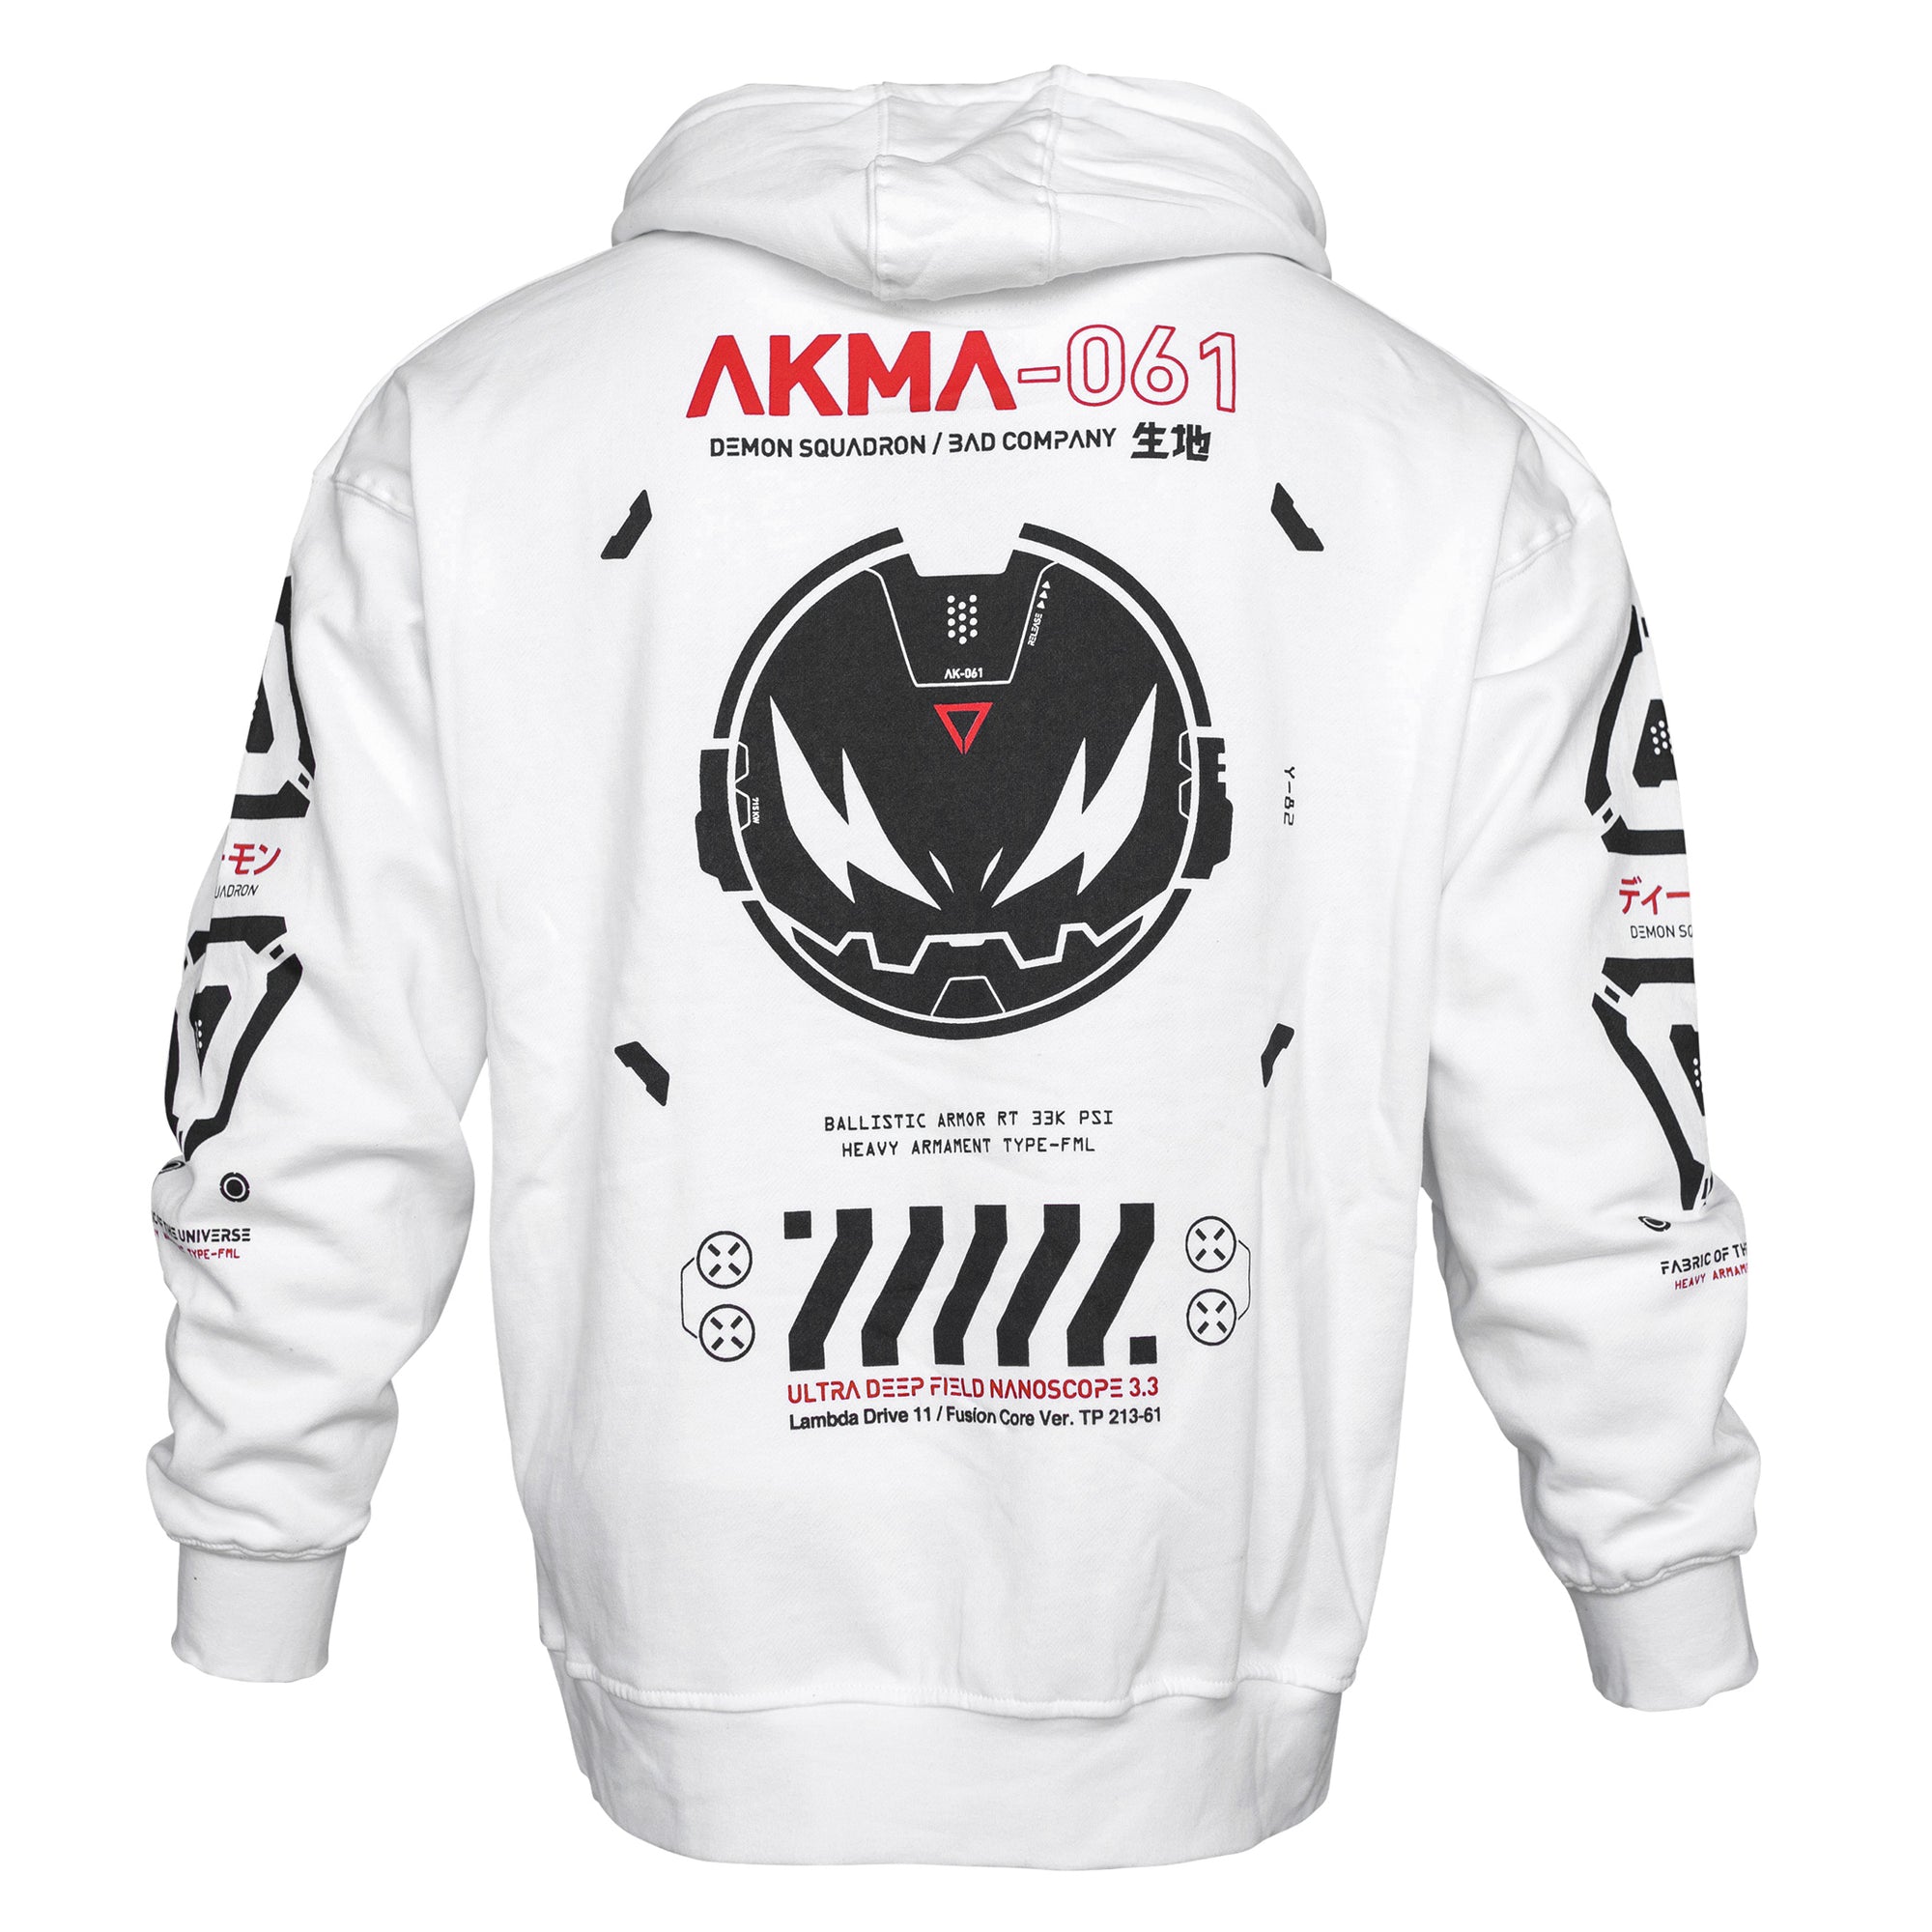 AKMA-061R White Hoodie